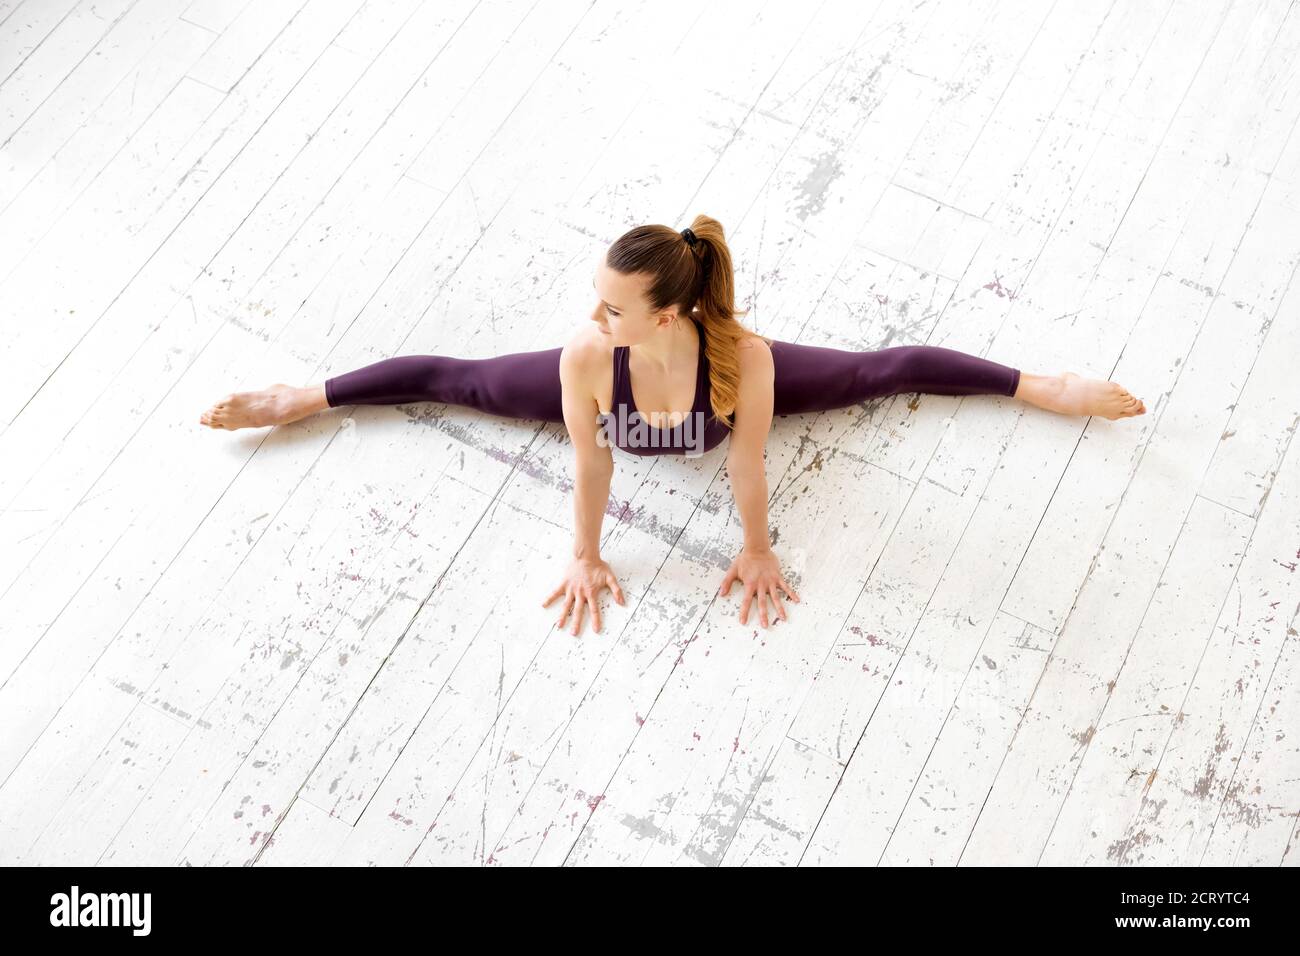 Junge weibliche Turnerin macht eine frontale Split Pose in einem Blick von oben auf einem weißen Boden in einem hohen Key Gym in einem Gesundheits-und Fitness-Konzept mit Copyspace Stockfoto